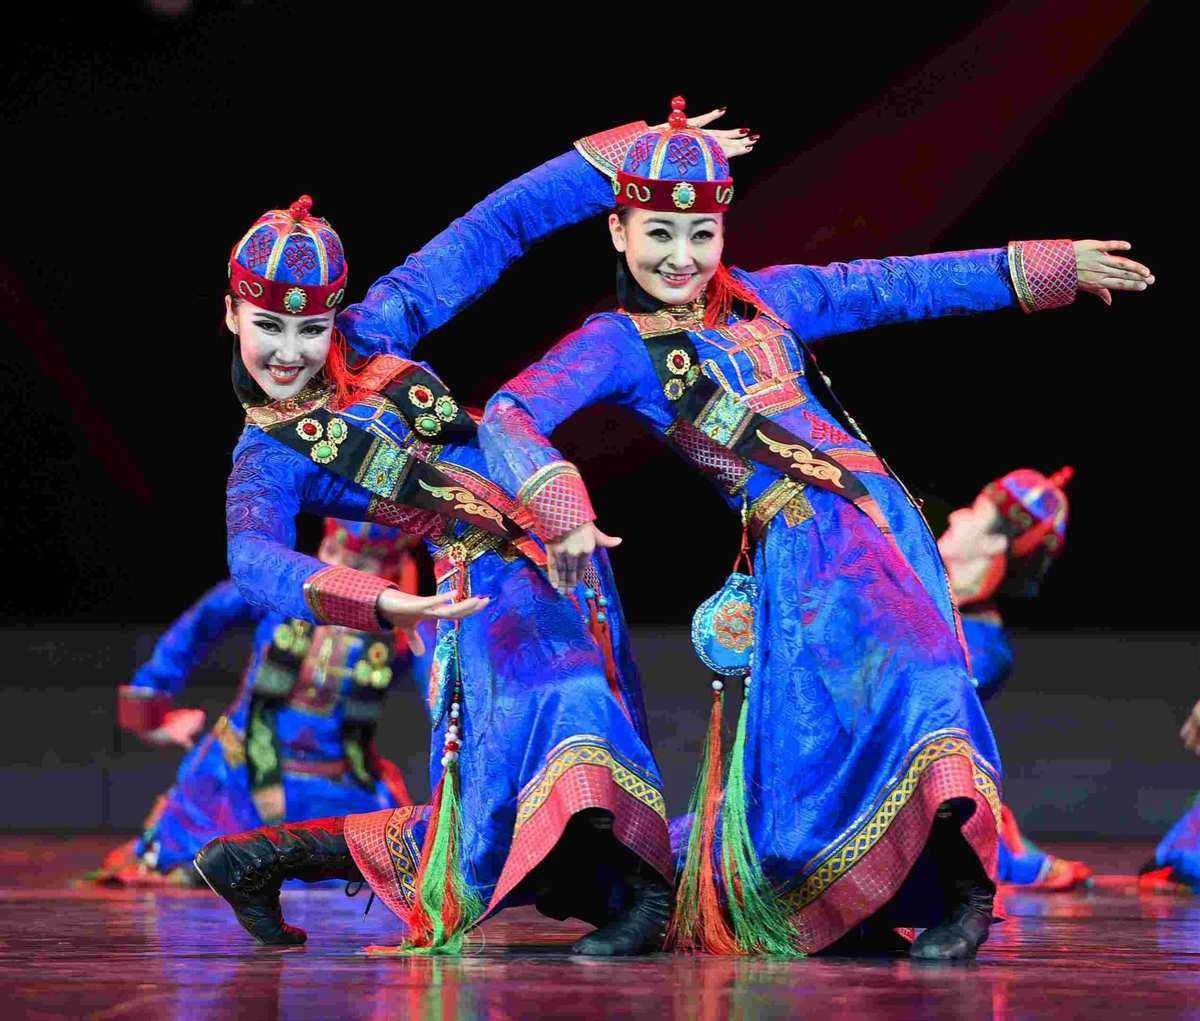 内蒙古获140余个舞蹈奖项 展蒙族舞蹈创作表演实力 - Powered by Discuz!